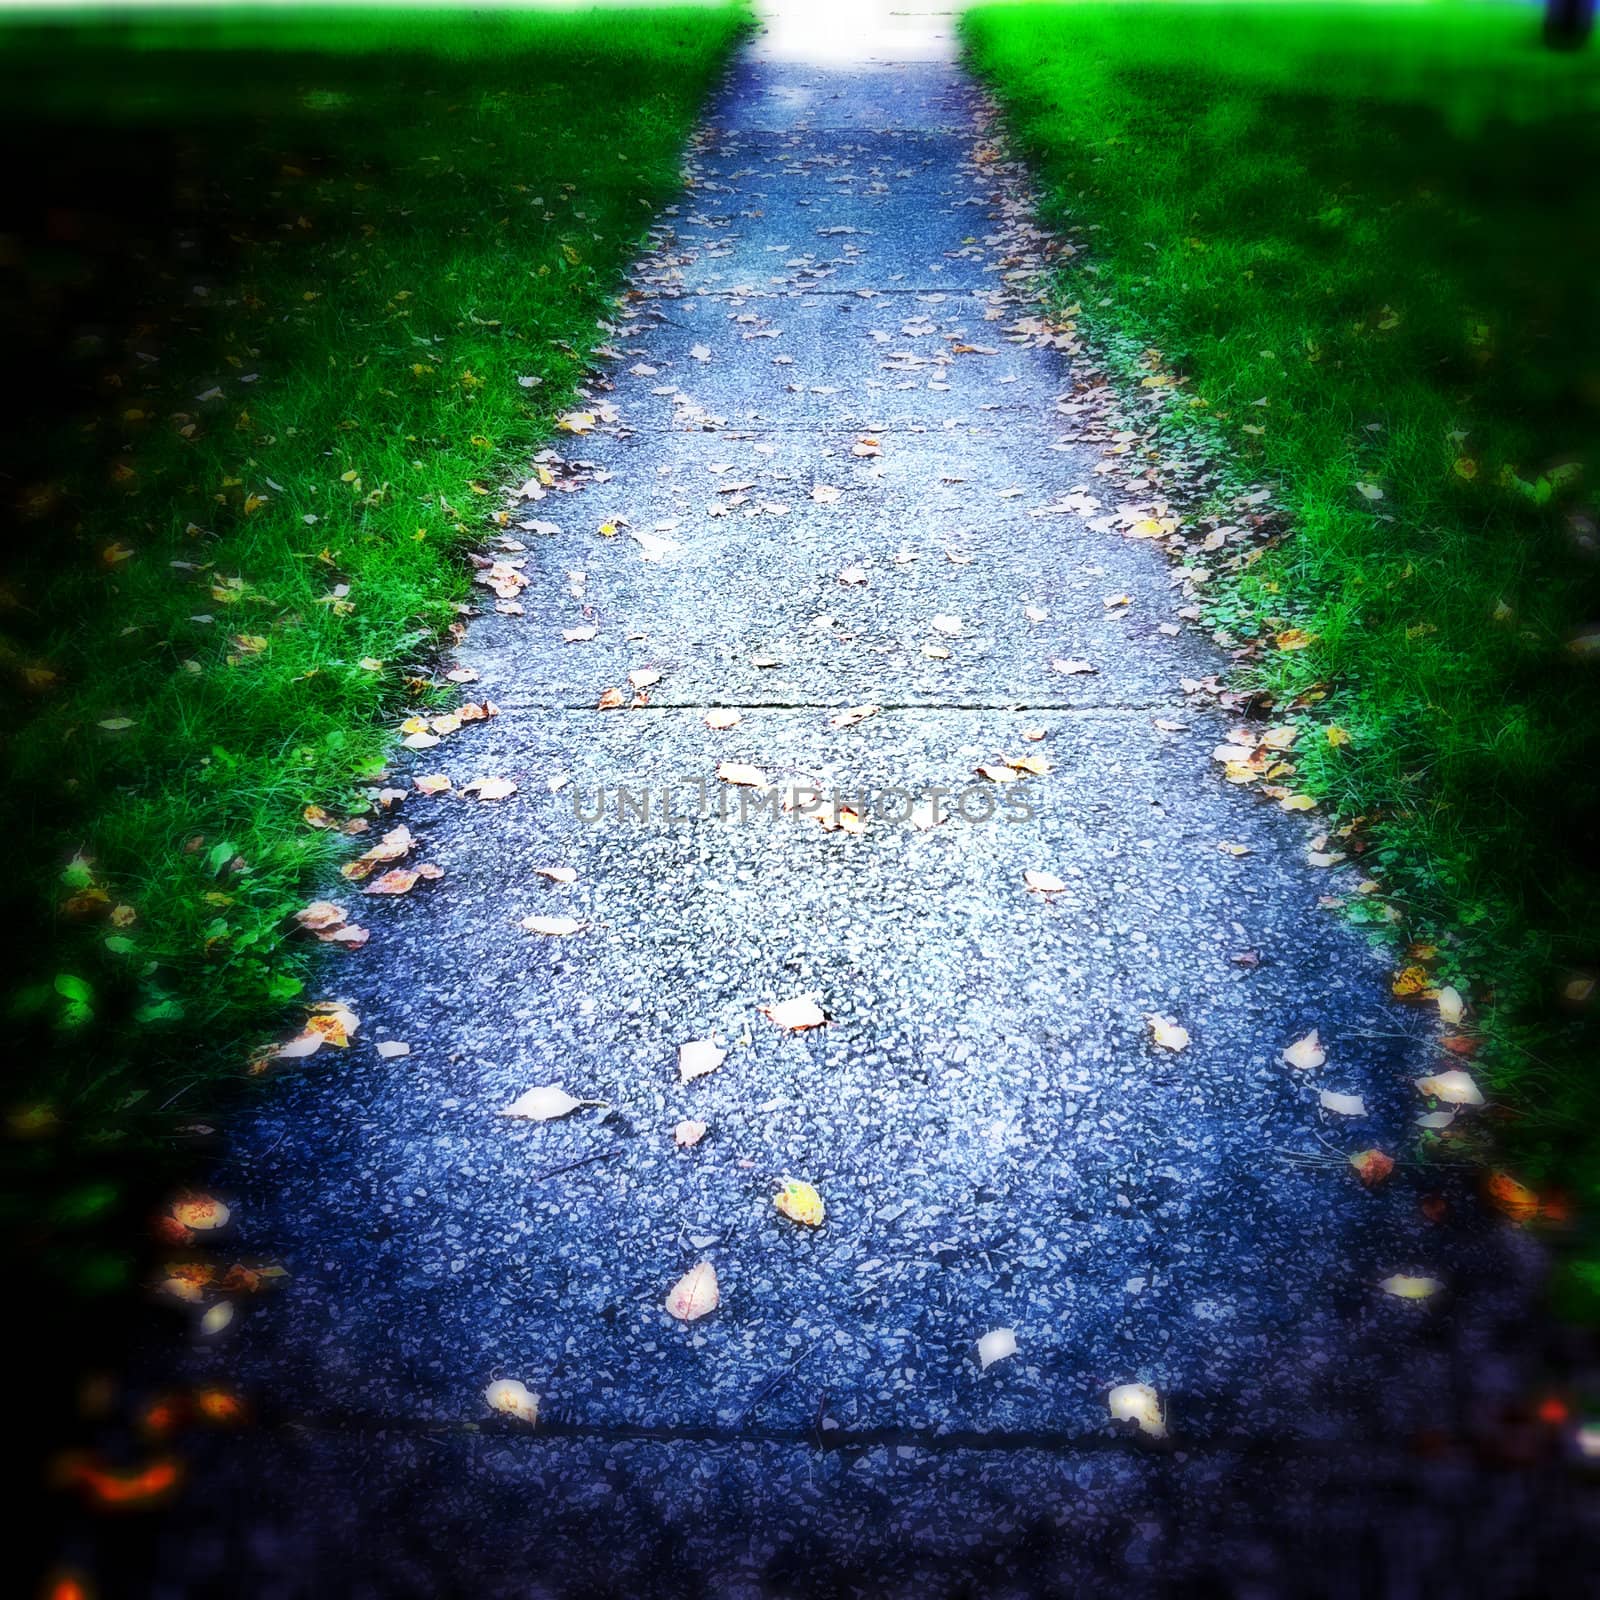 sidewalk with few leaves